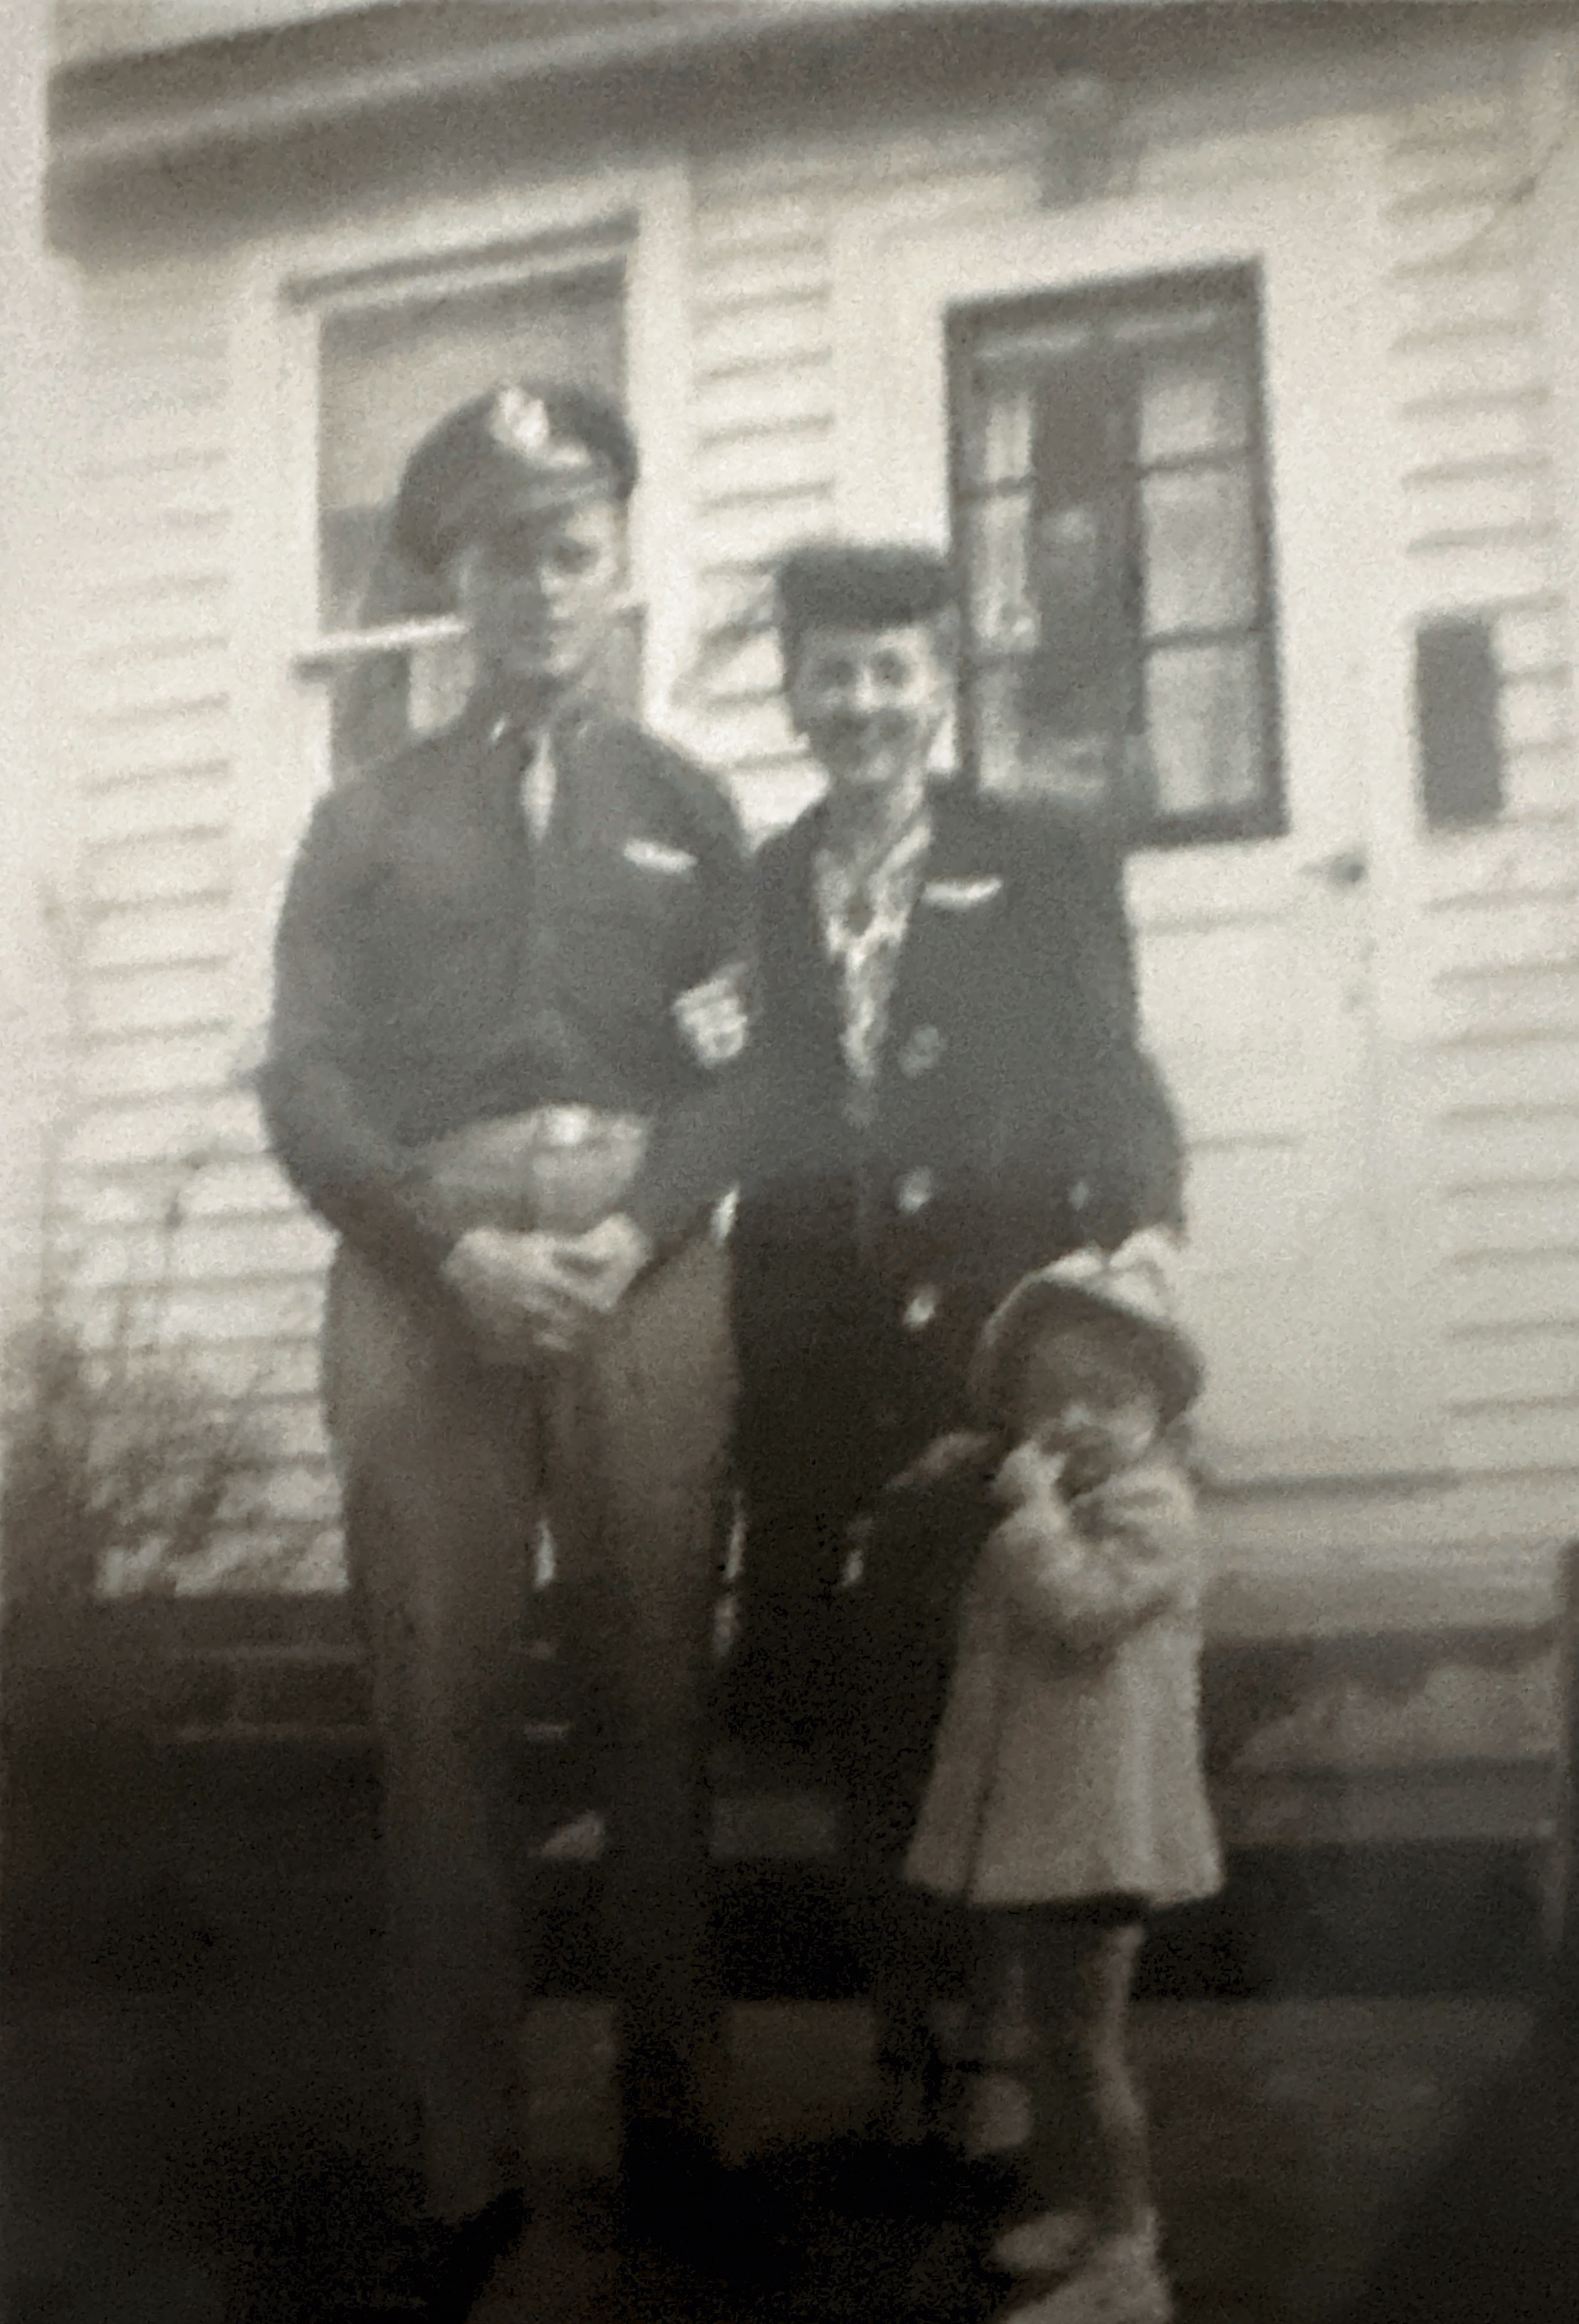 1943ish. Dad, Mom, Sherry